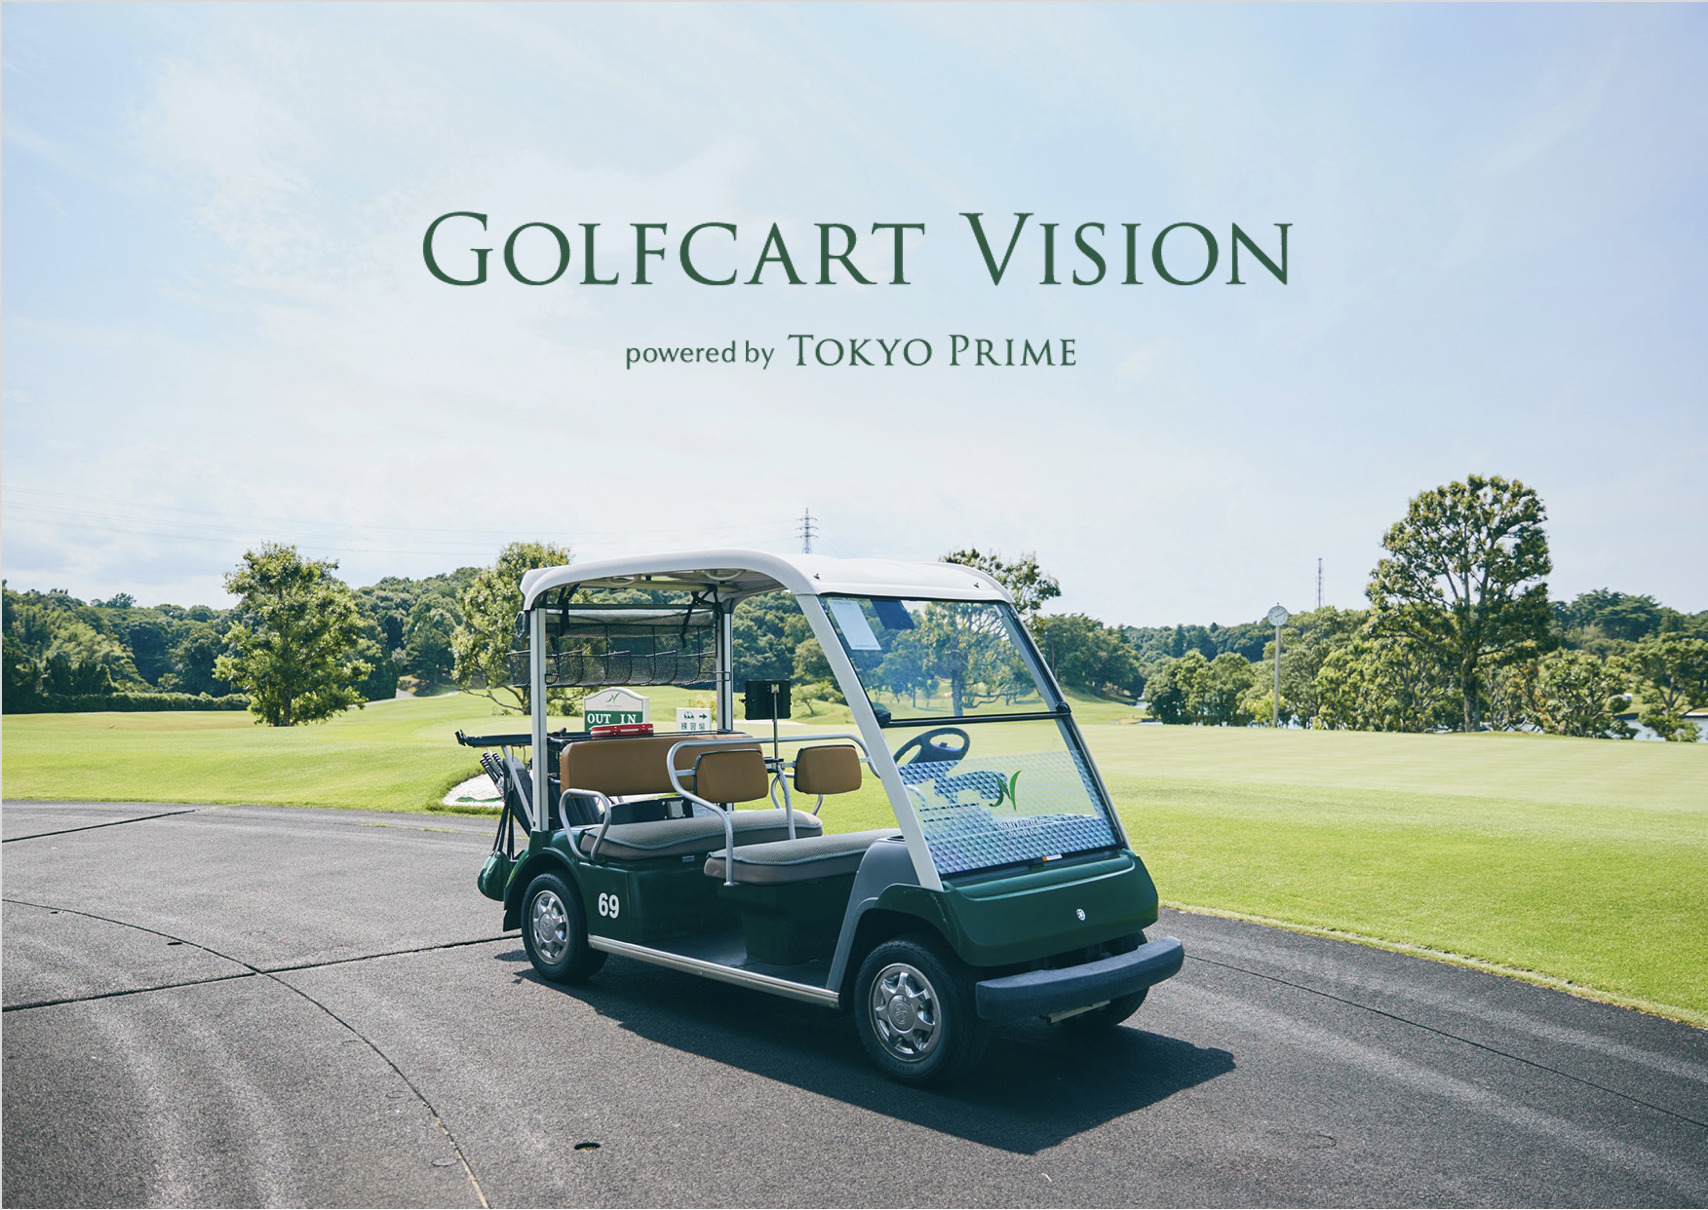 テレビ東京のビジネス情報番組「週刊ビジネス新書」にて「Golfcart Vision®︎ powered by Tokyo Prime」が紹介されました！